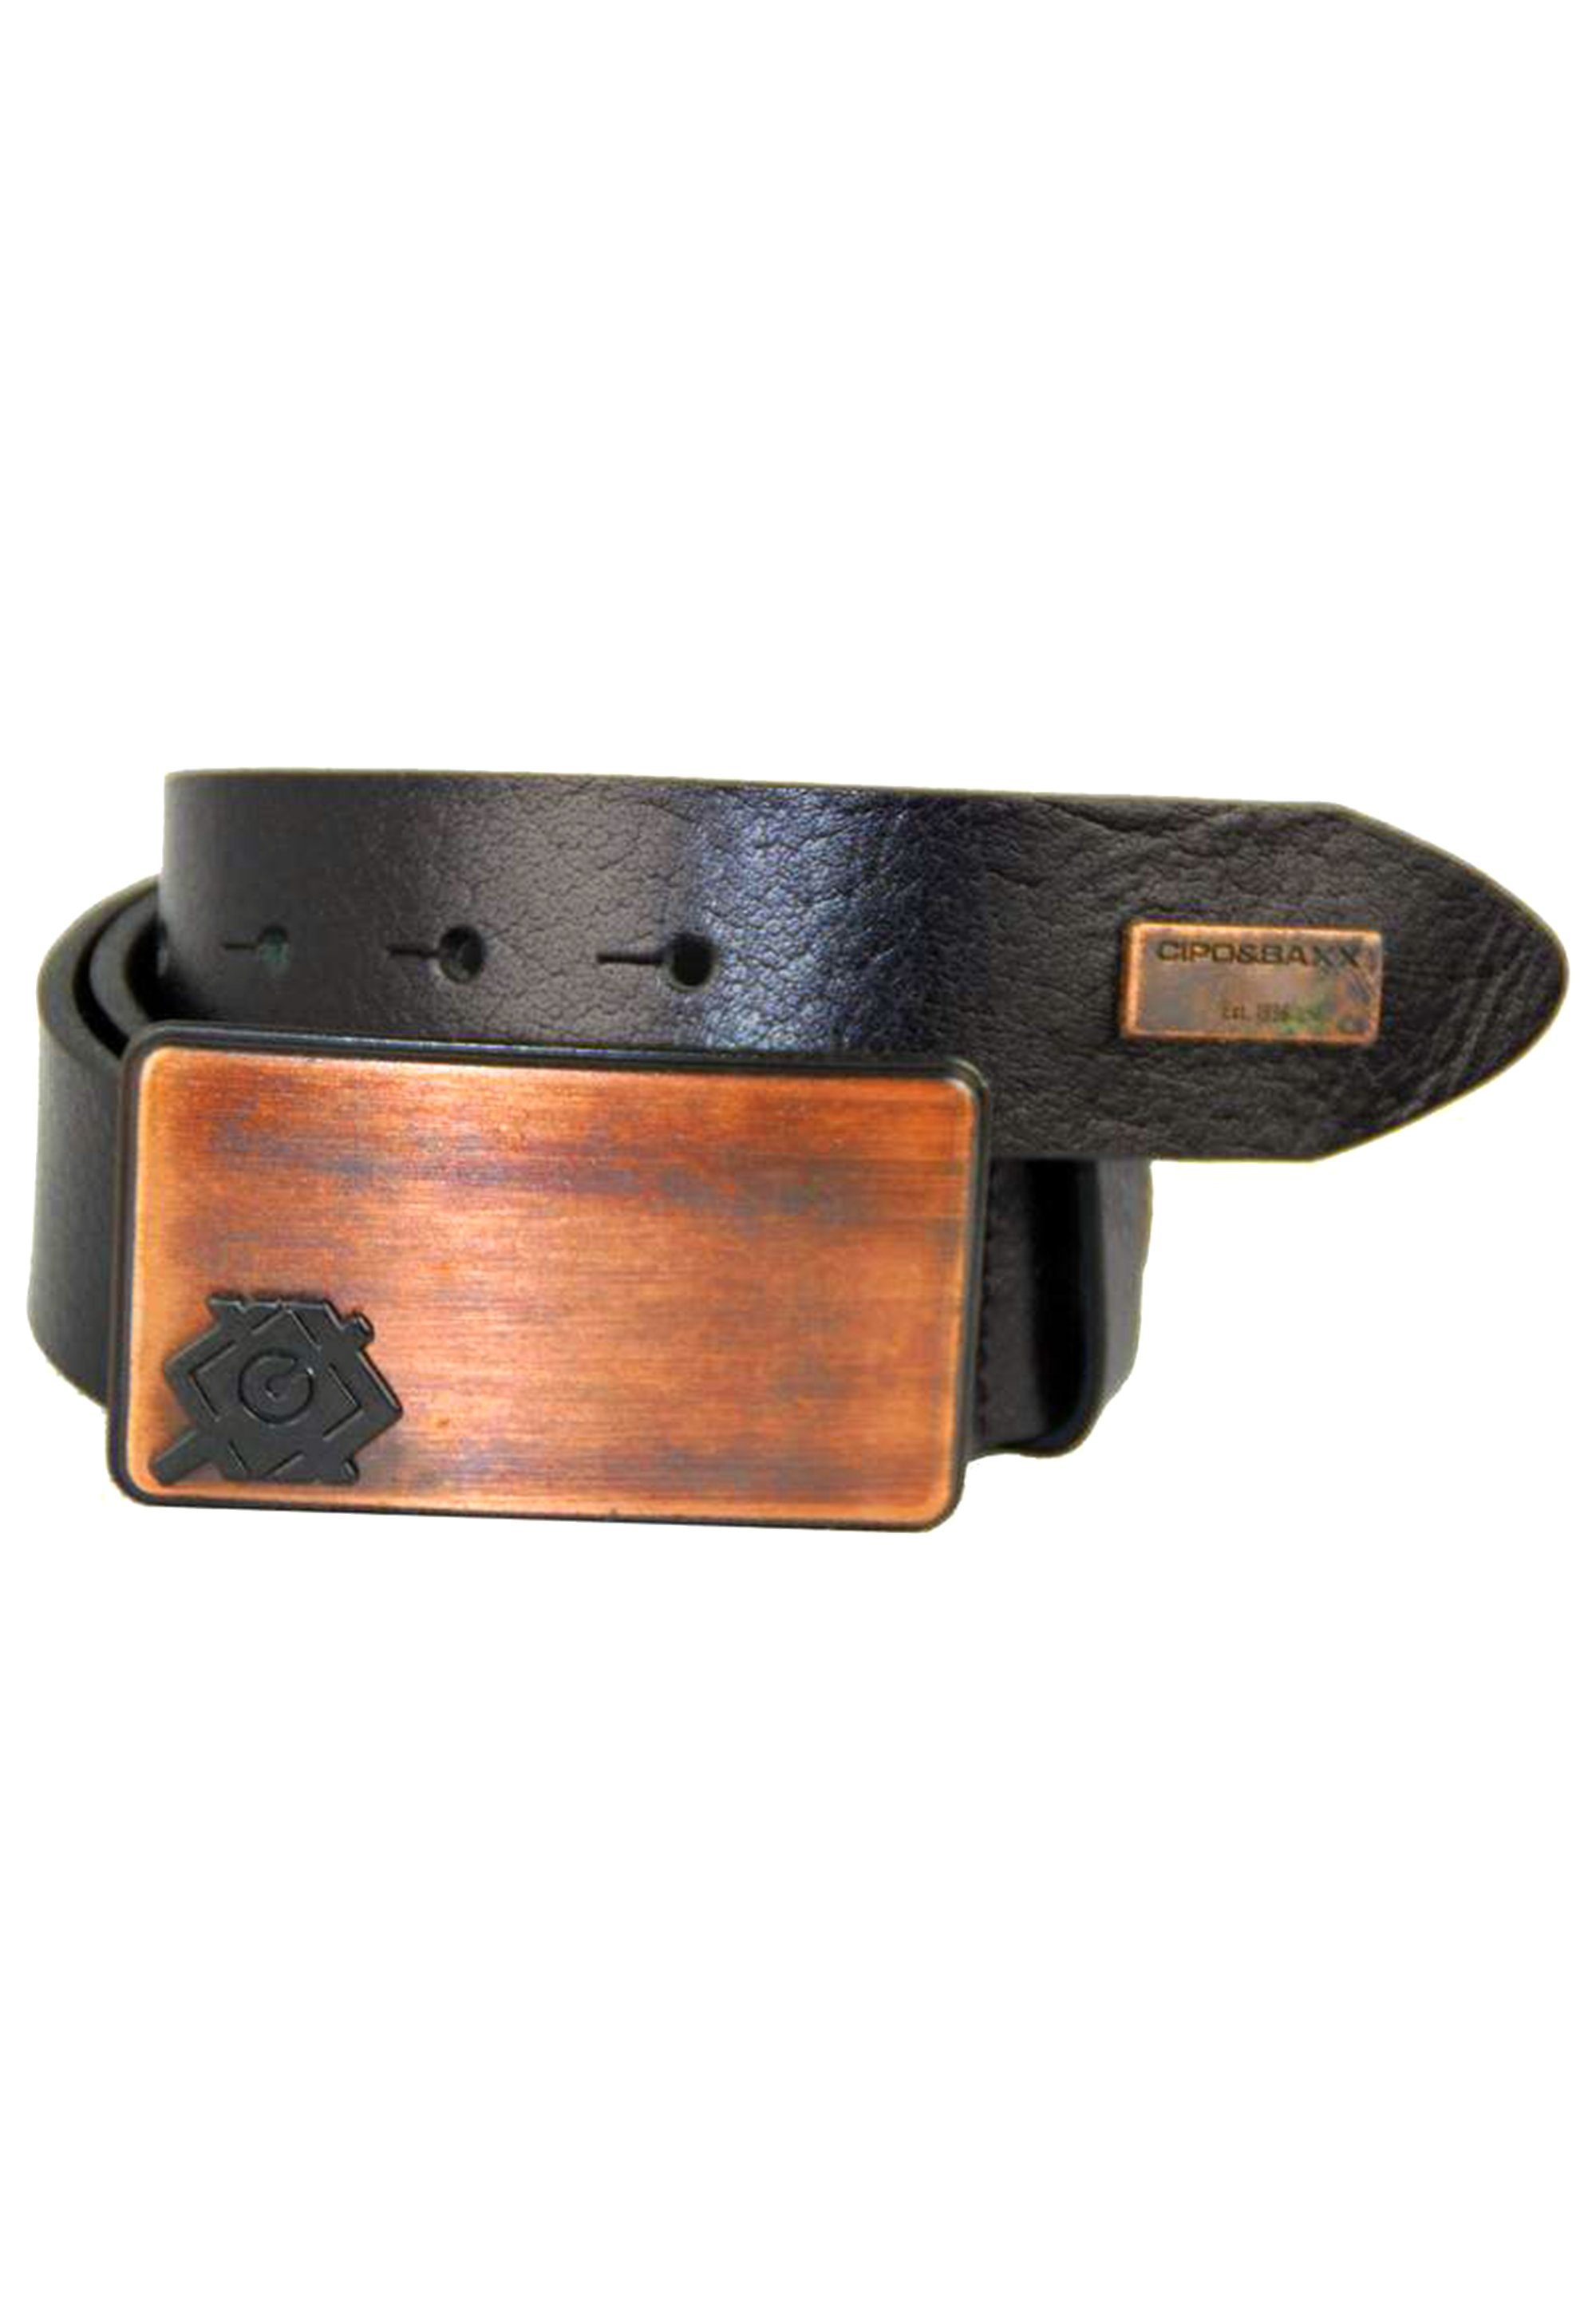 Metallschnalle Baxx Ledergürtel mit stylischer & Cipo schwarz